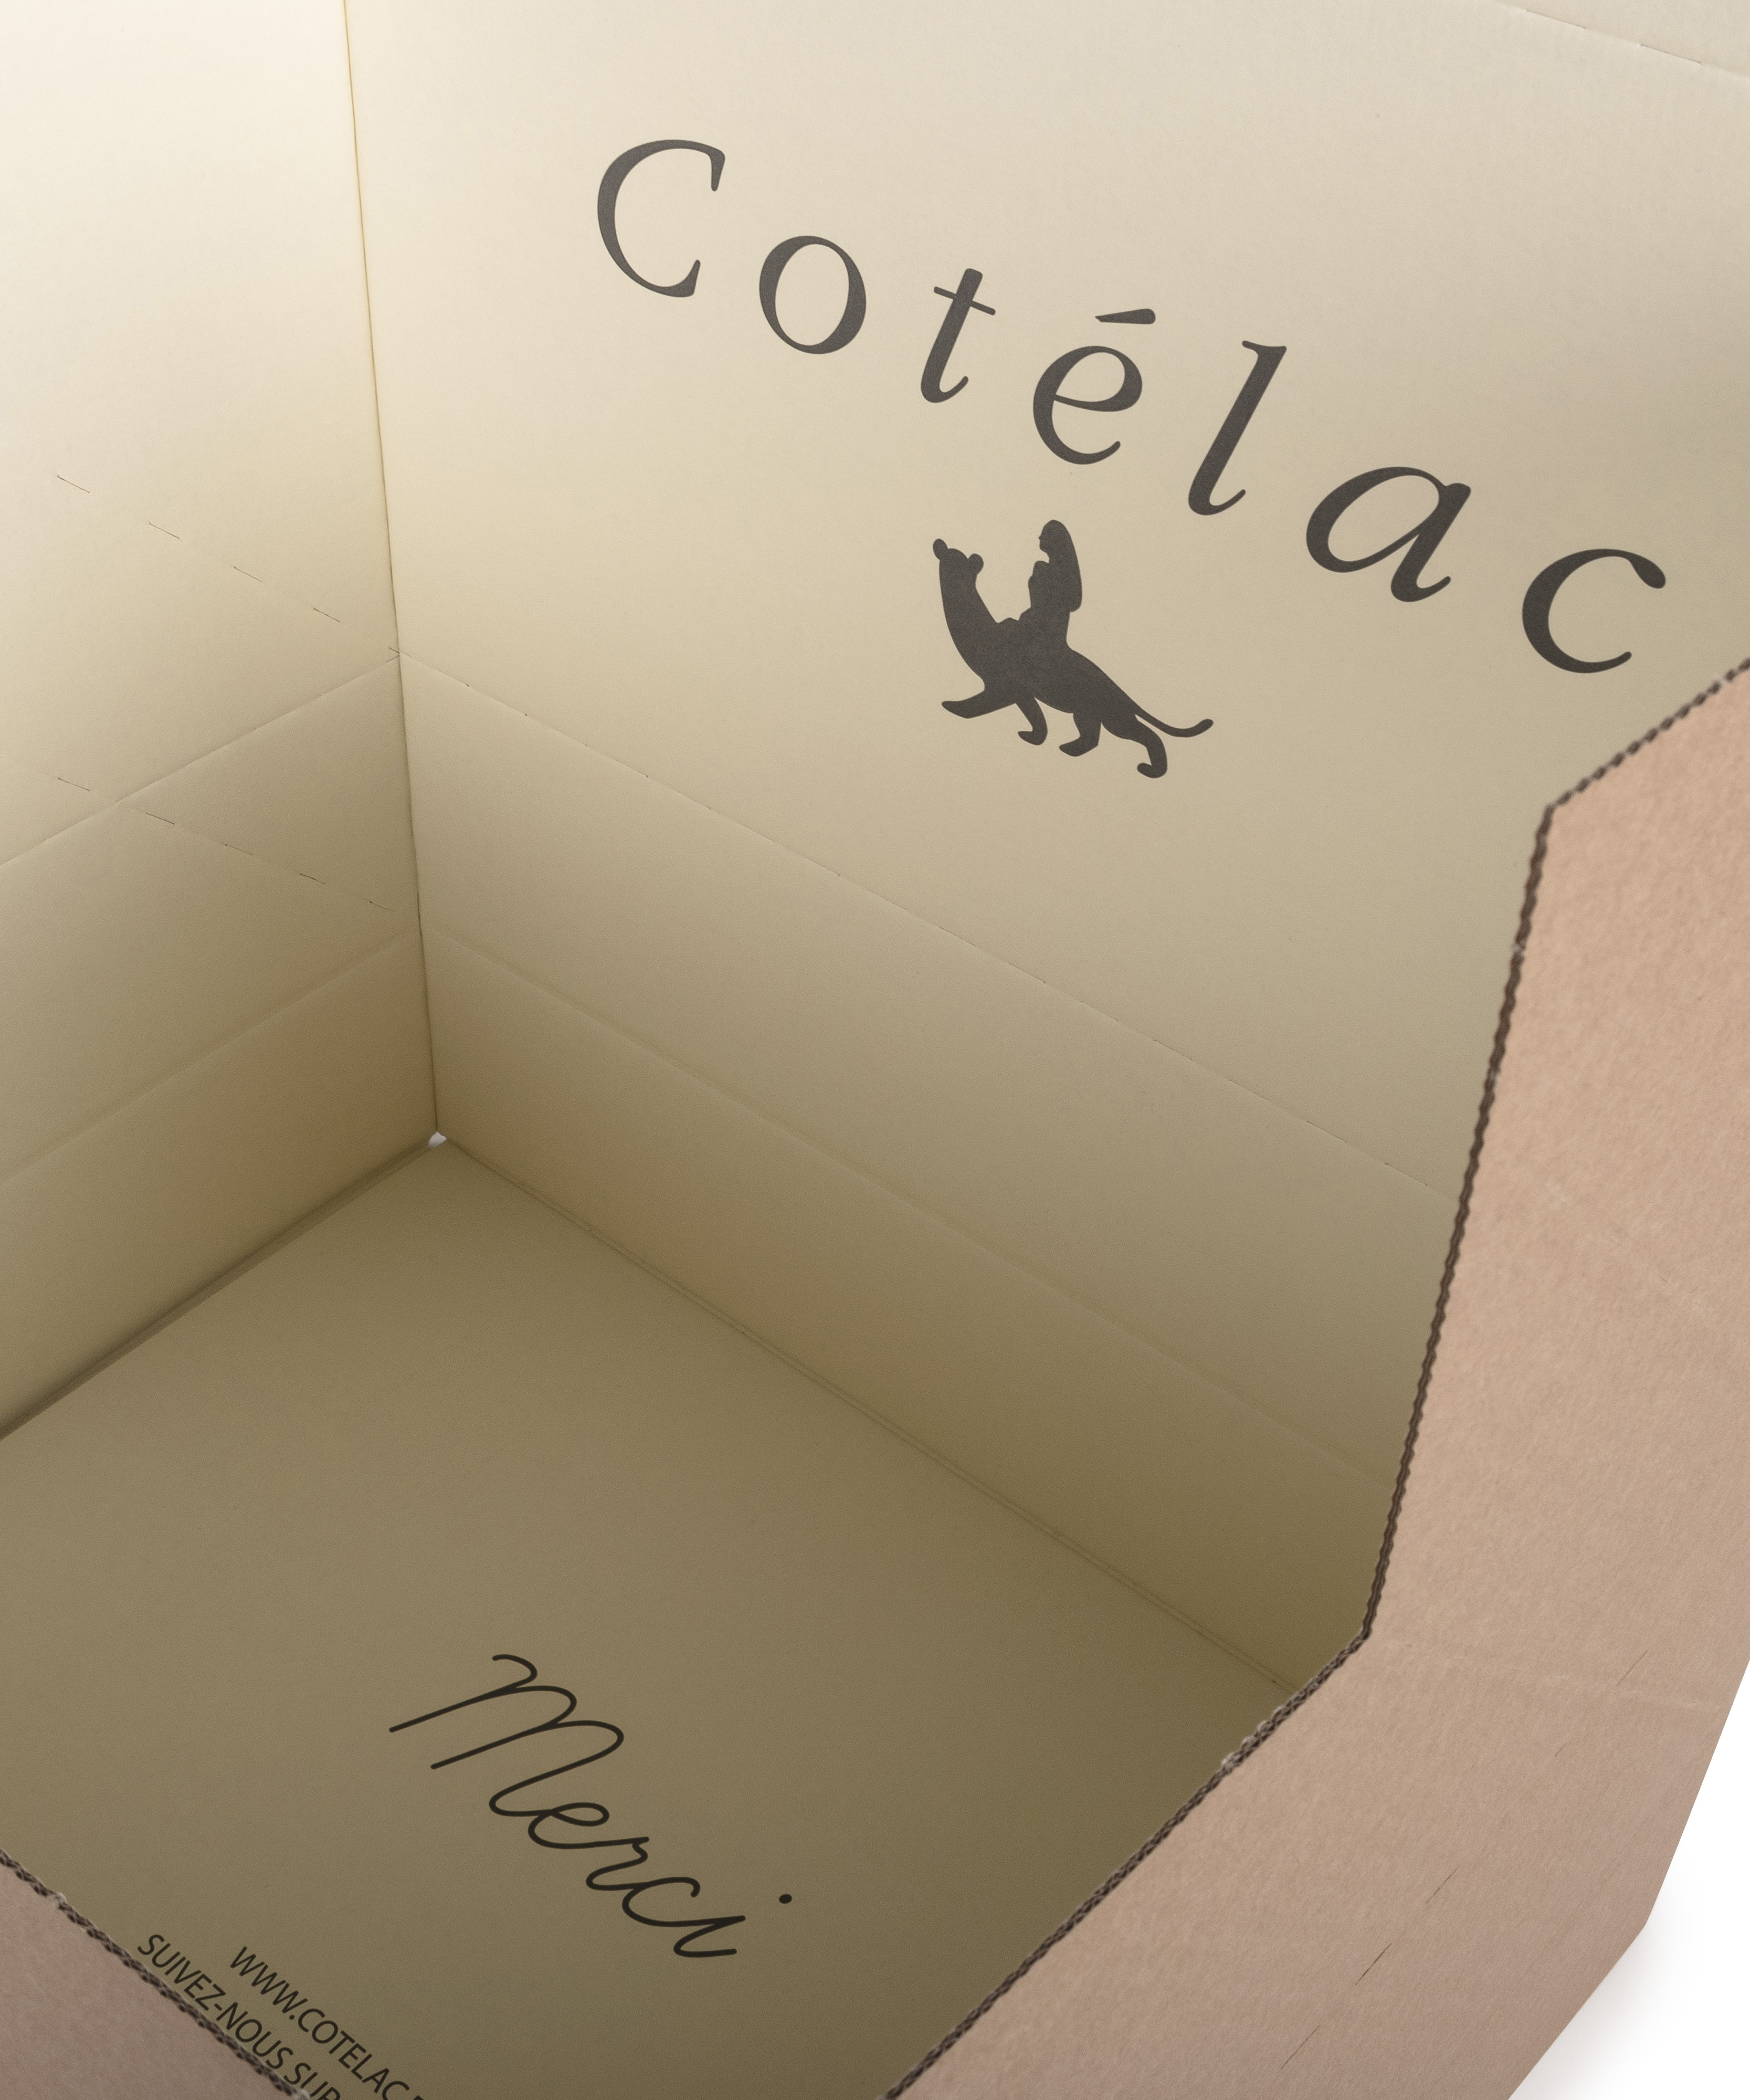 Réalisation emballage ecommerce personnalisé pour Cotélac (gros plan)